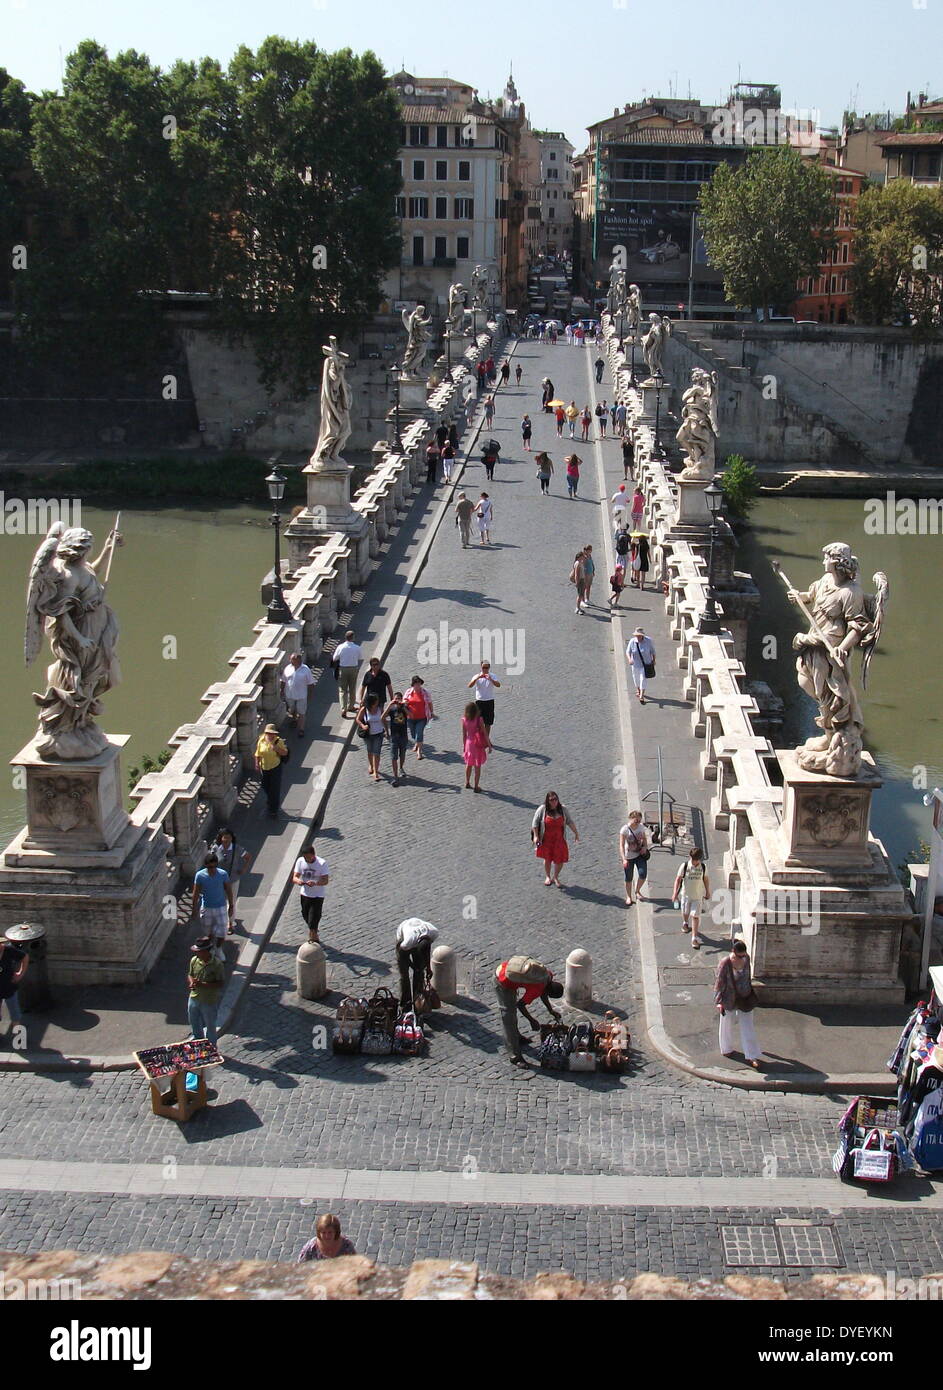 Die Ponte Sant'Angelo, (ehemals Aelian Brücke genannt) eine Brücke über den Tiber in Rom, Italien. Es wurde in 134 AD durch römische Kaiser Hadrian abgeschlossen, und es verbindet das Stadtzentrum mit seinen ehemaligen Mausoleum, die jetzt das Castel Sant'Angelo. Die Brücke mit kolossalen Statuen der Engel Holding die Instrumente der Leidenschaft geschmückt ist. Stockfoto